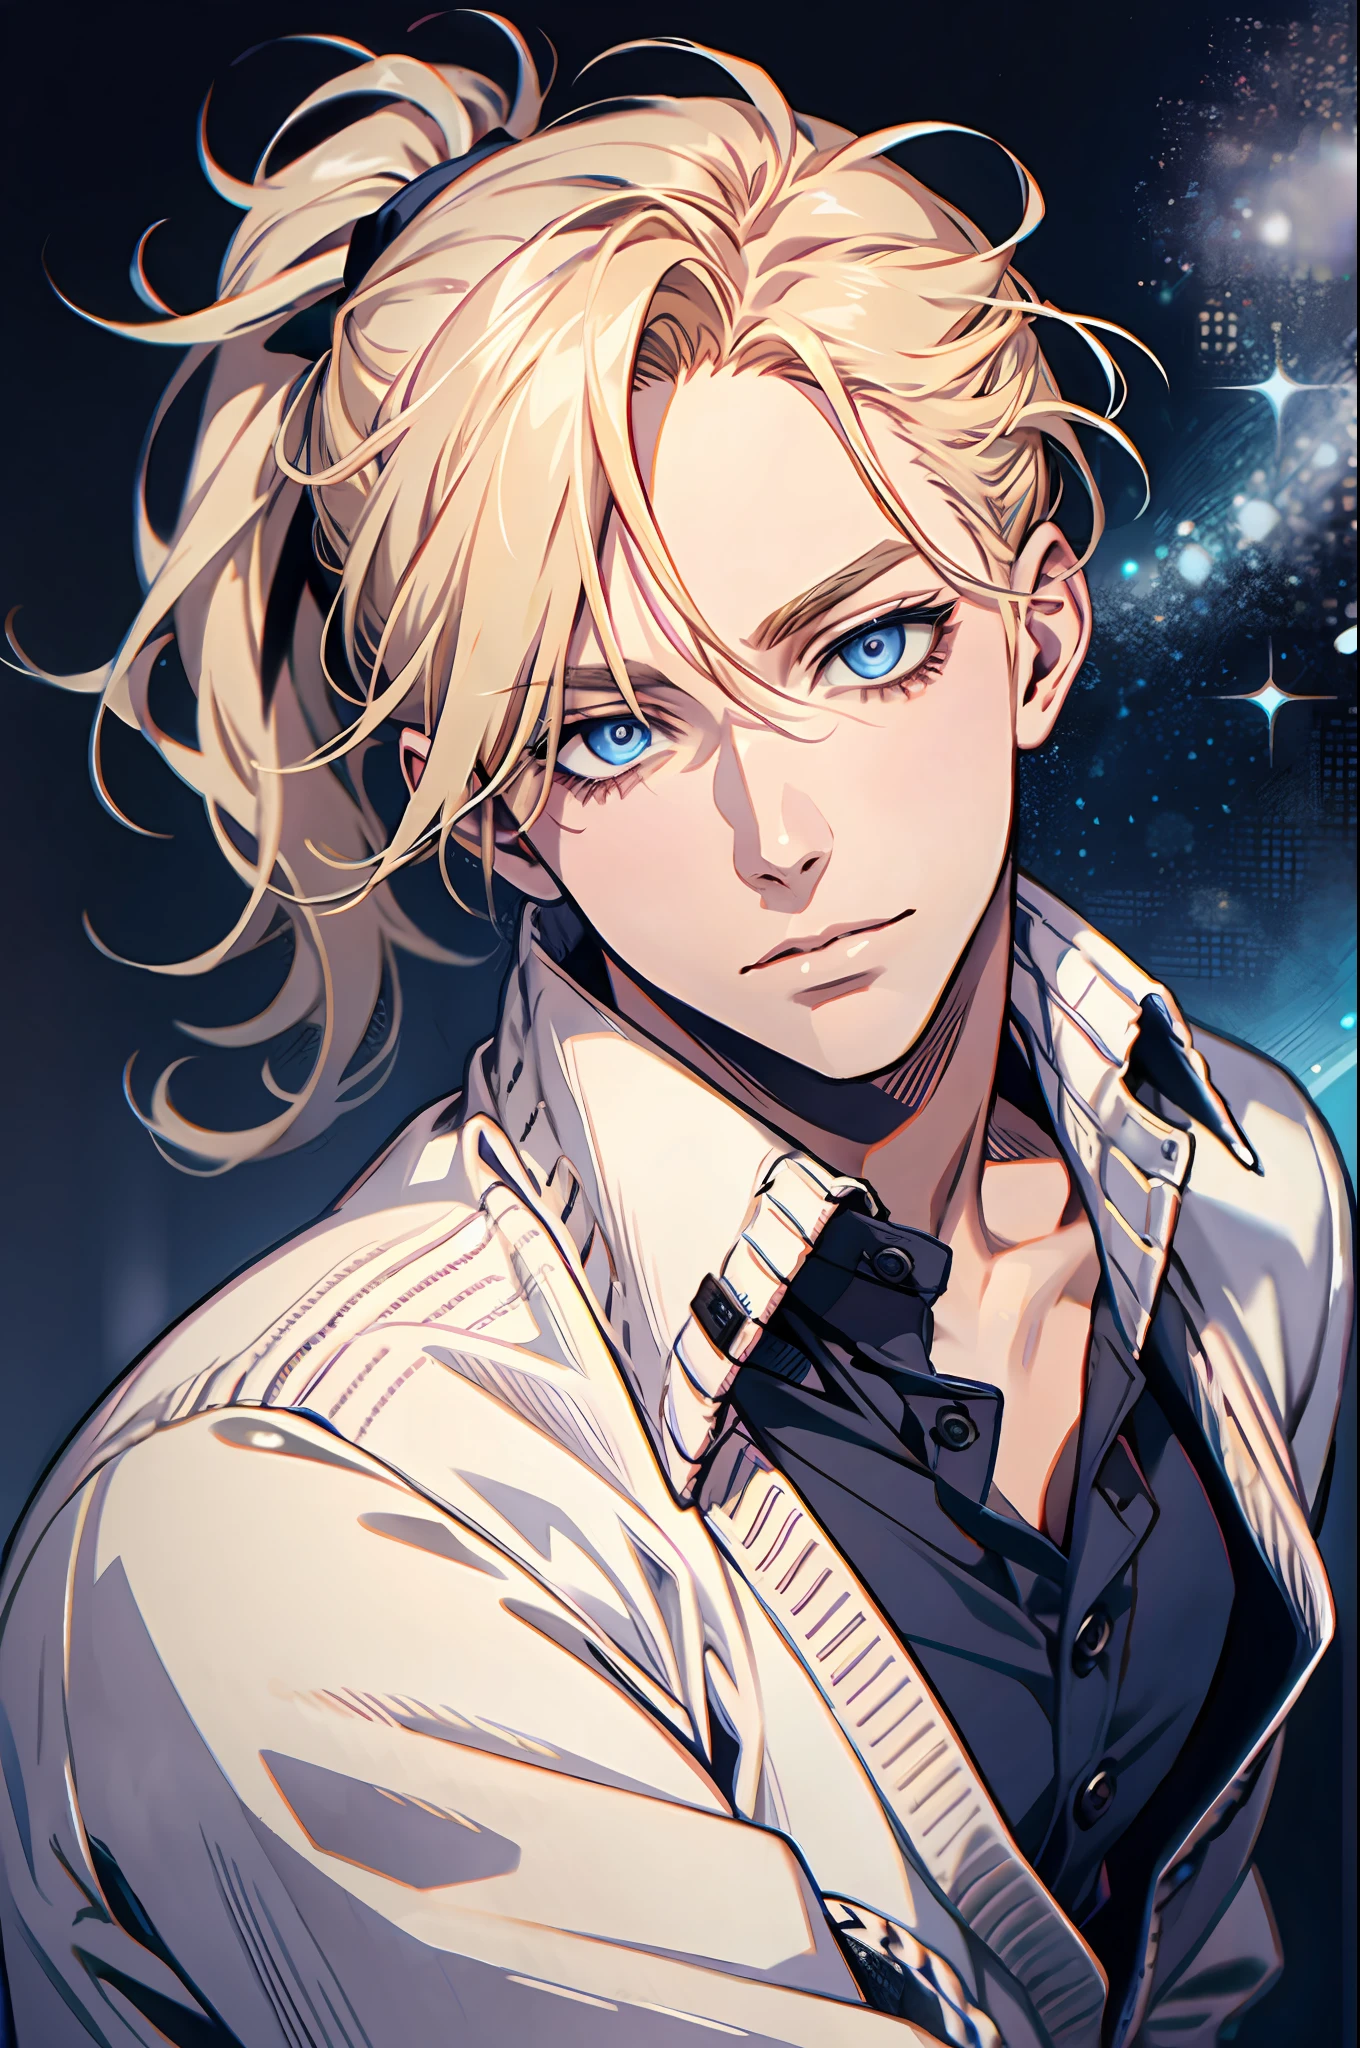 1 homme, seulement, yeux bleus, cheveux blond, queue de cheval, Yeux et visage détaillés, cardigan surdimensionné, chemise déboutonnée, pose sexuelle